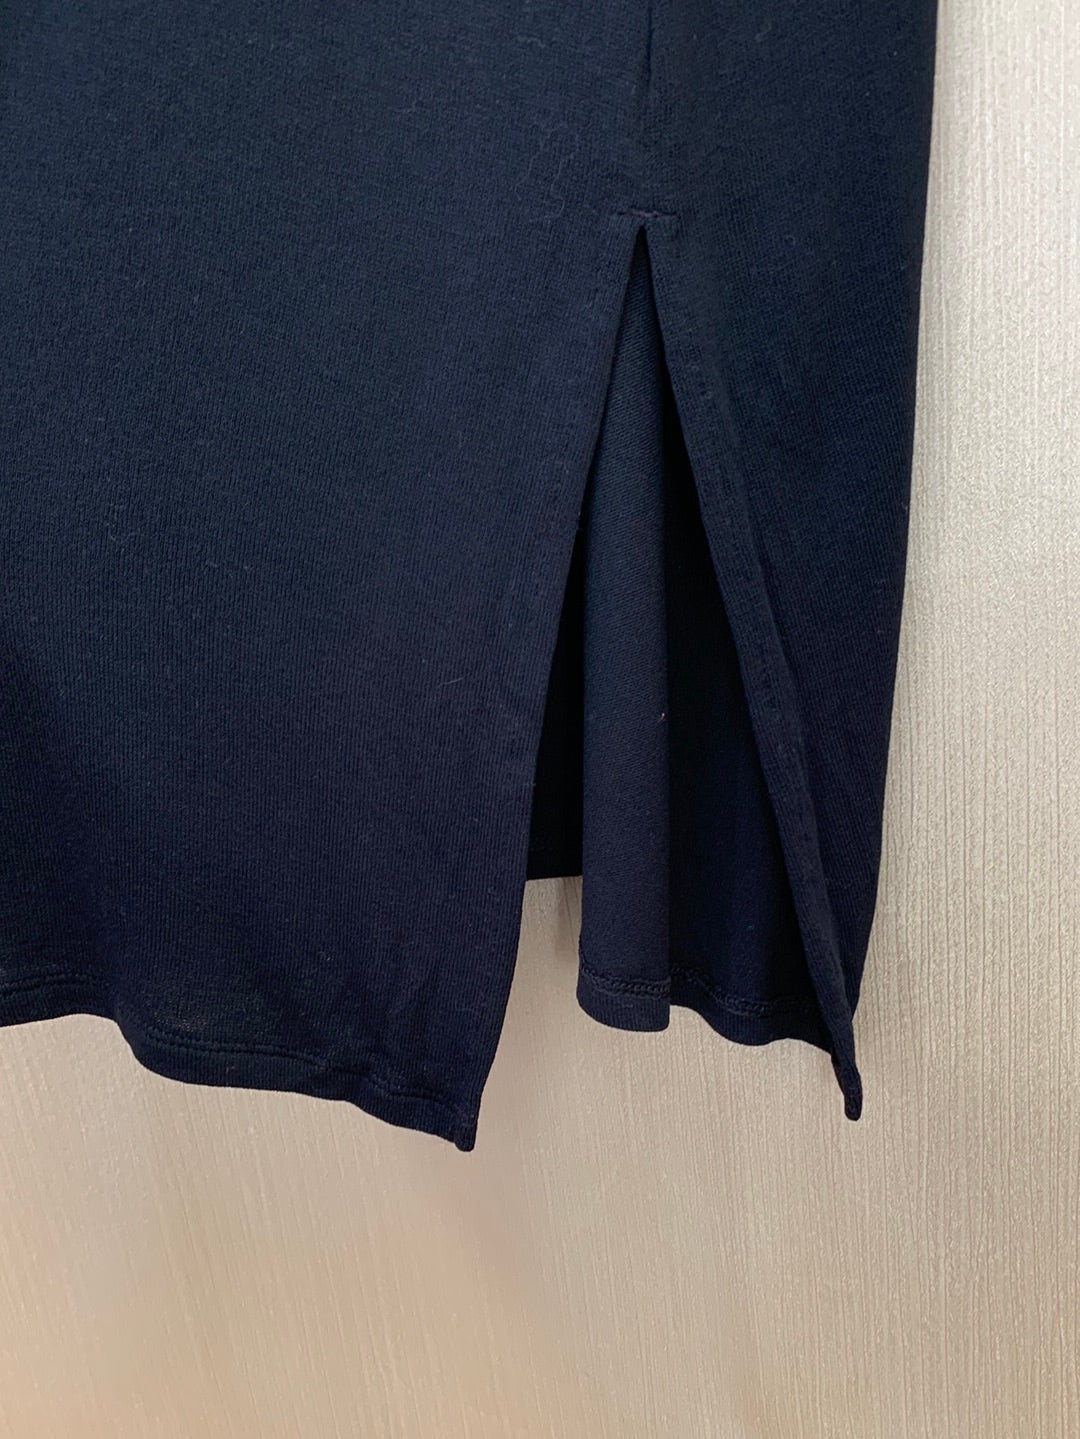 NWT - J JILL black Rayon Knit Button Up LS Cardigan Dress Tunic - 3X